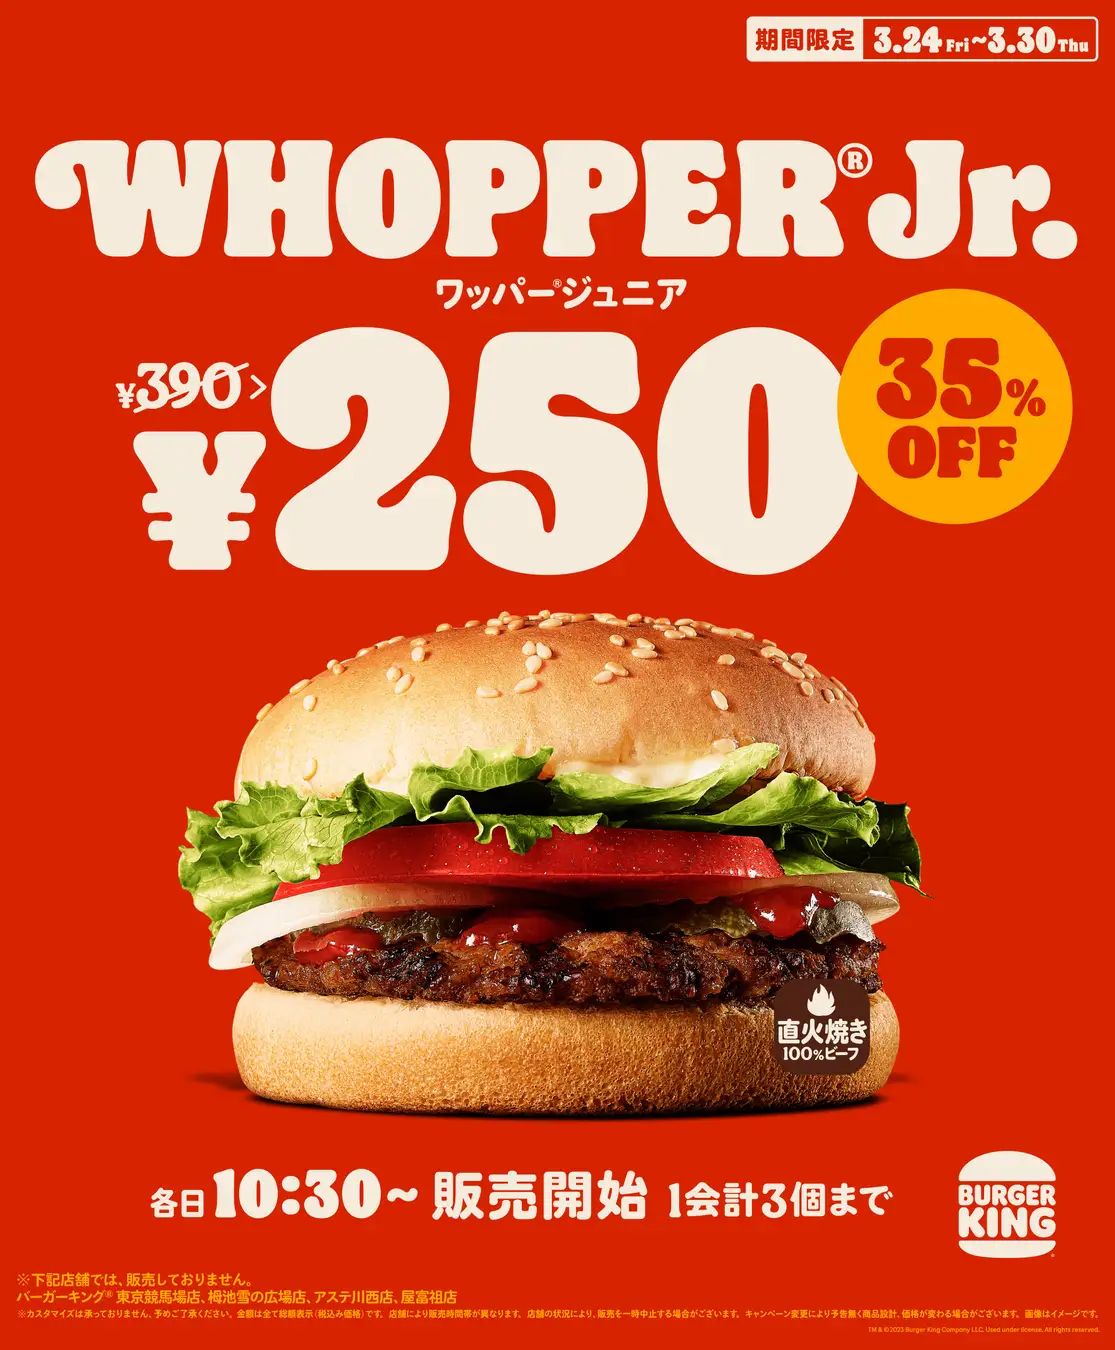 バーガーキング「ワッパージュニア」250円特価キャンペーン